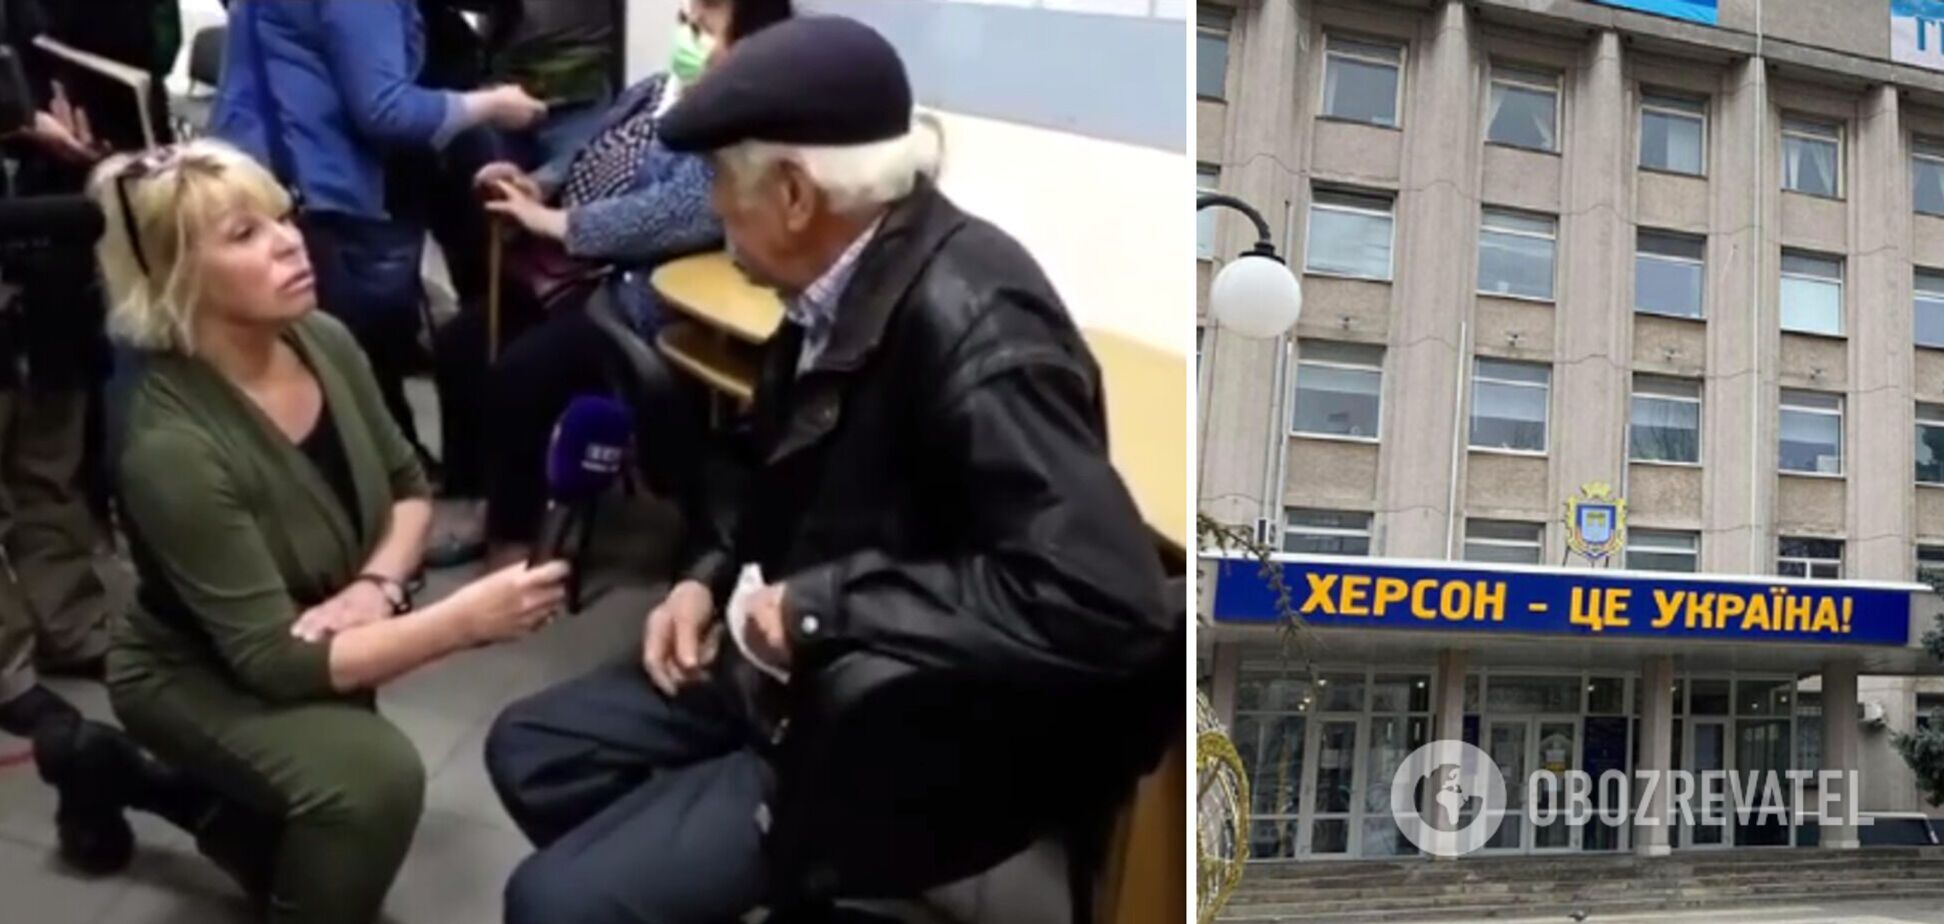 'Хочу жити в Україні!' Пенсіонер з Херсона зіпсував 'картинку' пропагандистів правдою. Відео